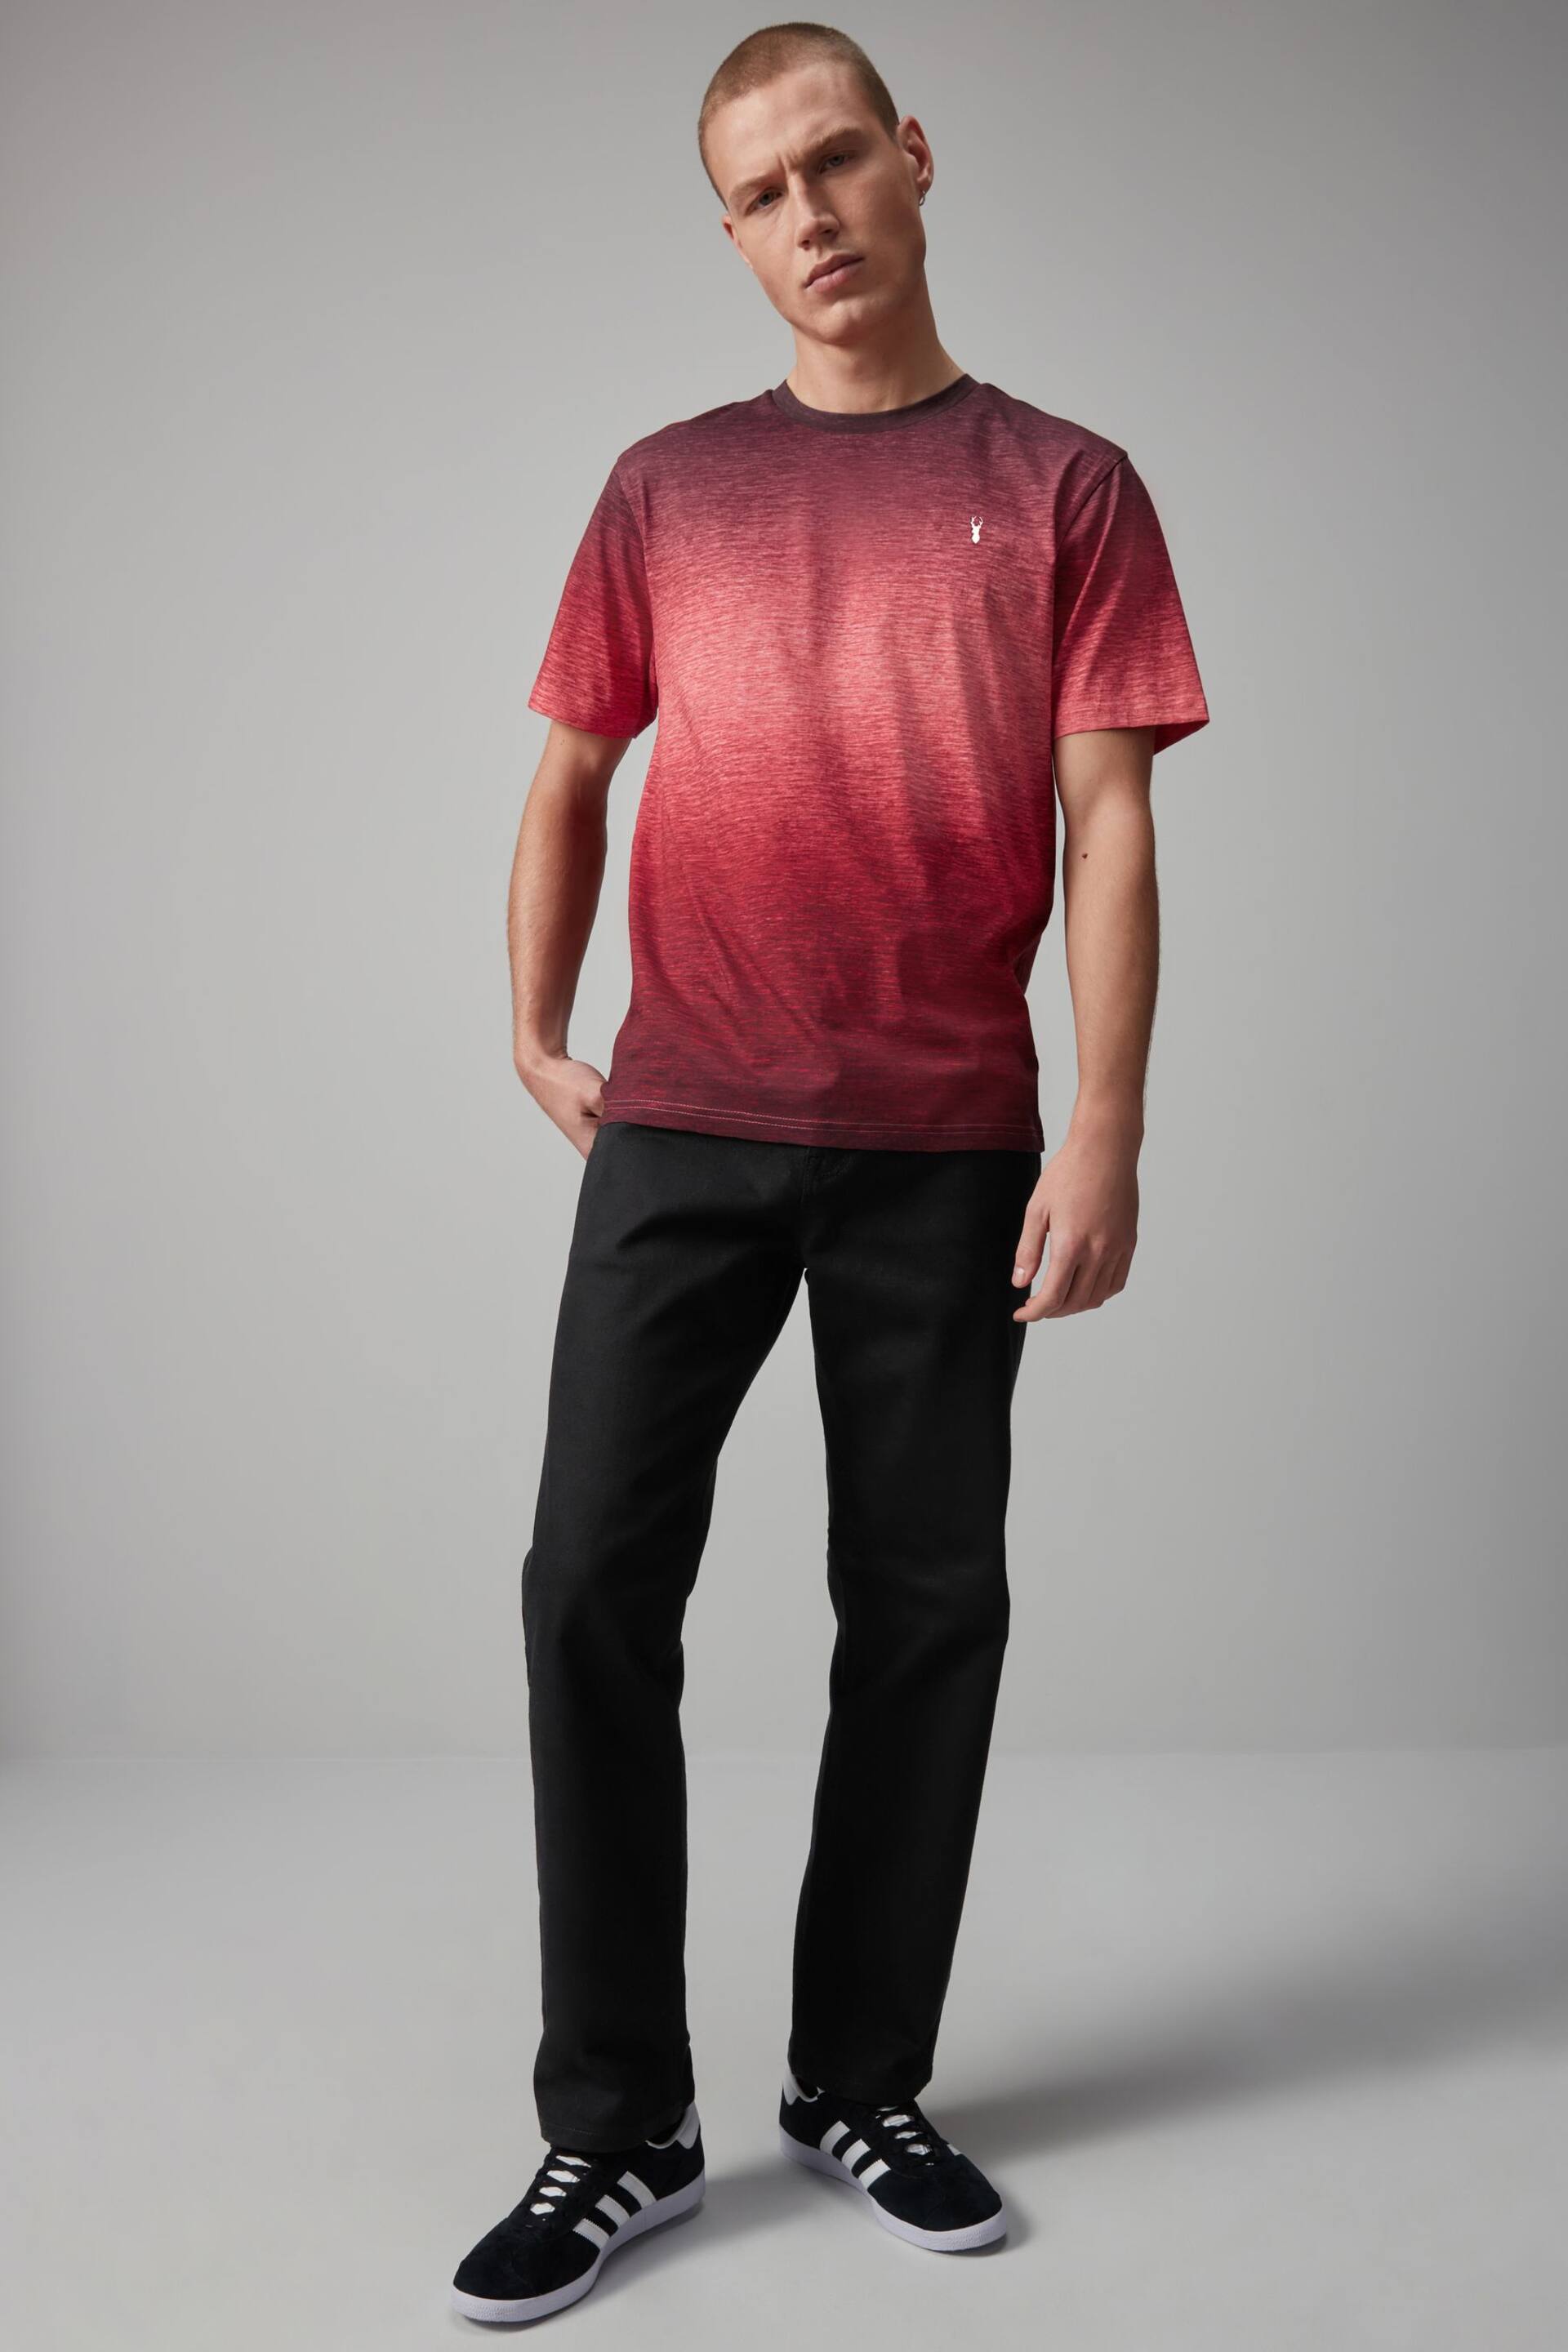 Red Dip Dye T-Shirt - Image 2 of 8